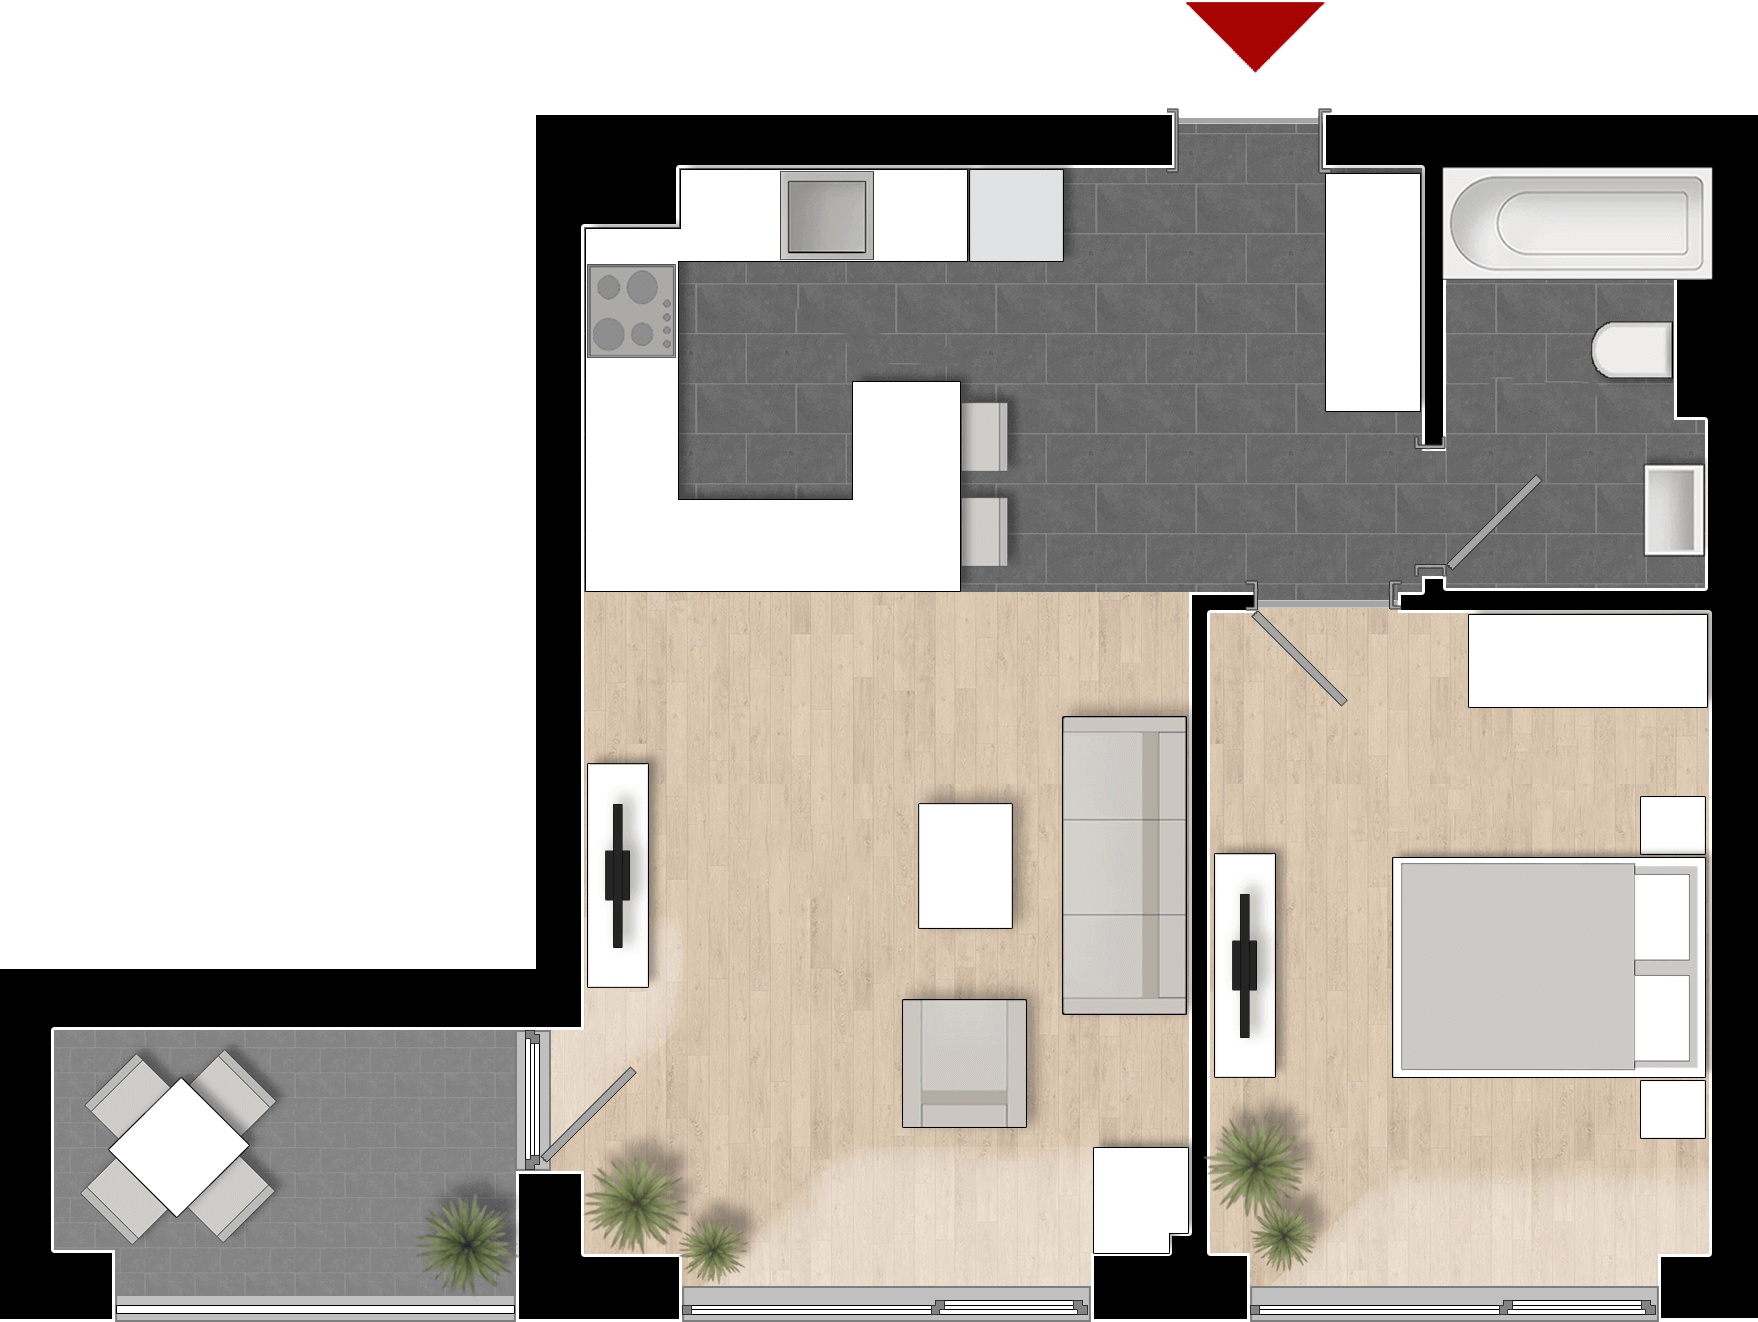  Apartament 512, Tip de apartament 1A cu 2 camere 